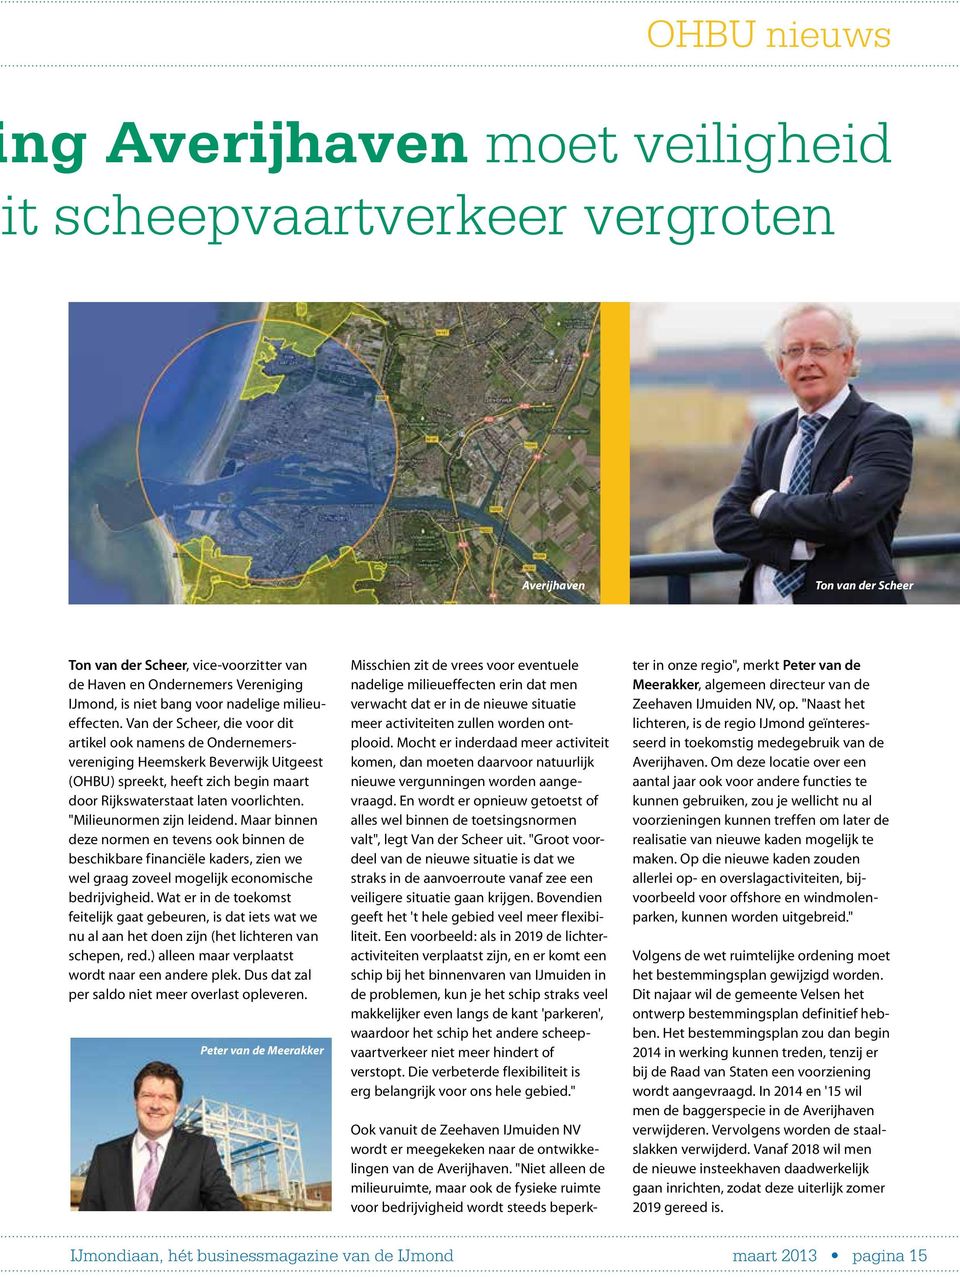 Van der Scheer, die voor dit artikel ook namens de Ondernemersvereniging Heemskerk Beverwijk Uitgeest (OHBU) spreekt, heeft zich begin maart door Rijkswaterstaat laten voorlichten.